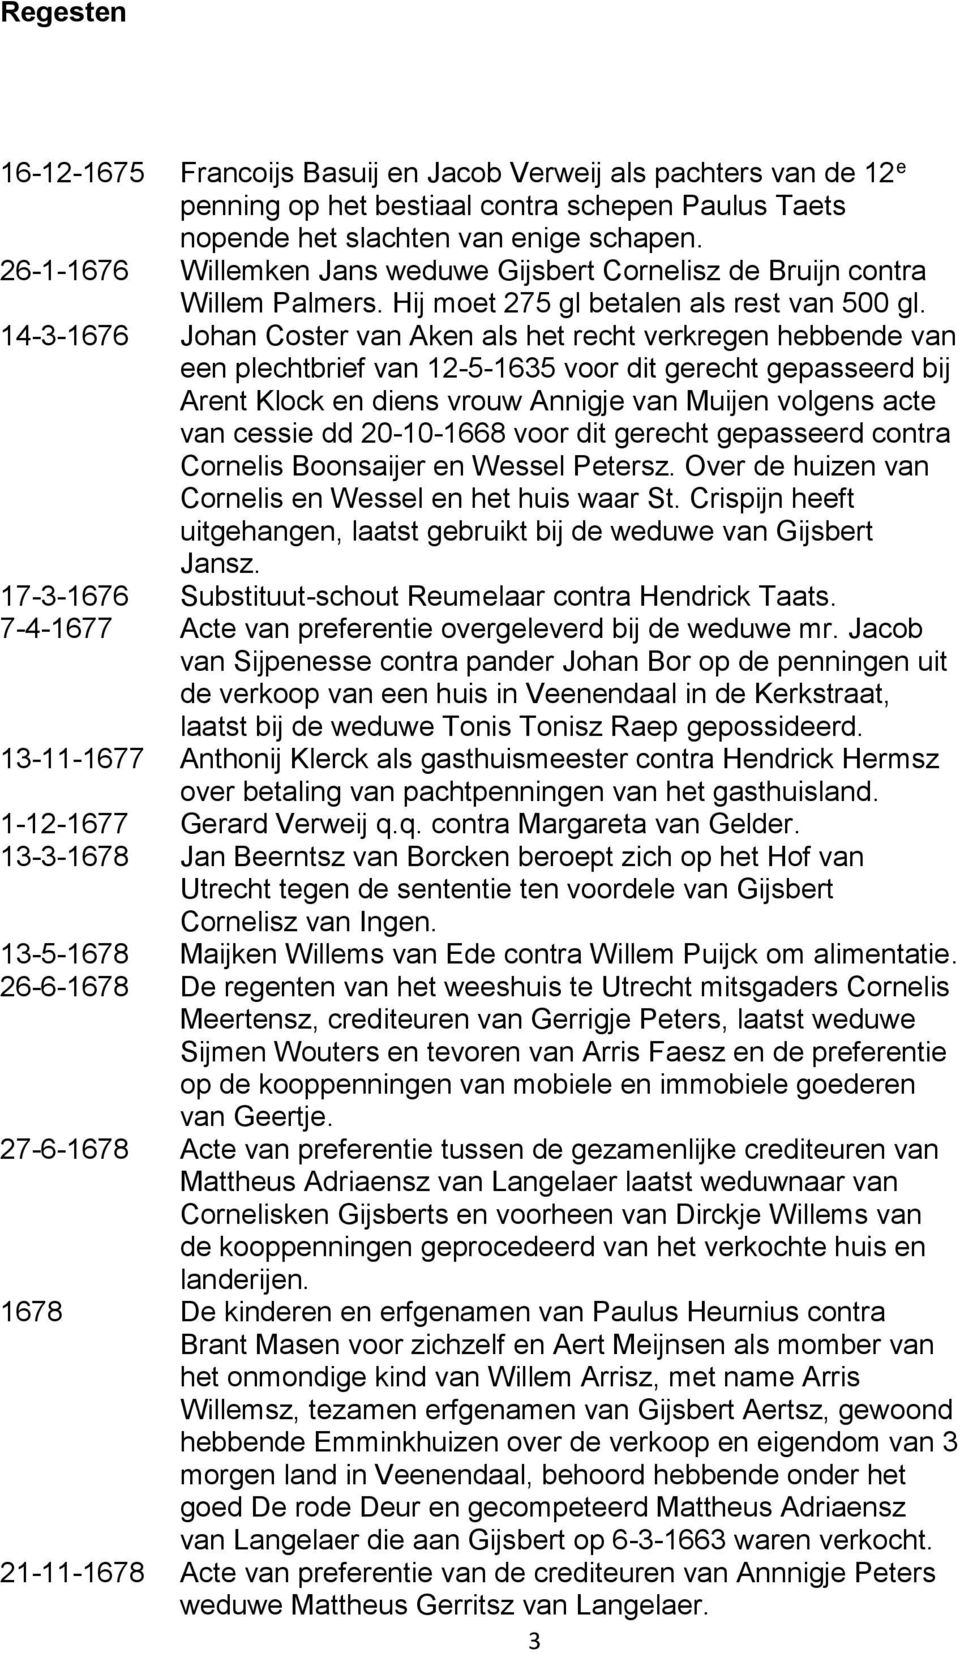 14-3-1676 Johan Coster van Aken als het recht verkregen hebbende van een plechtbrief van 12-5-1635 voor dit gerecht gepasseerd bij Arent Klock en diens vrouw Annigje van Muijen volgens acte van